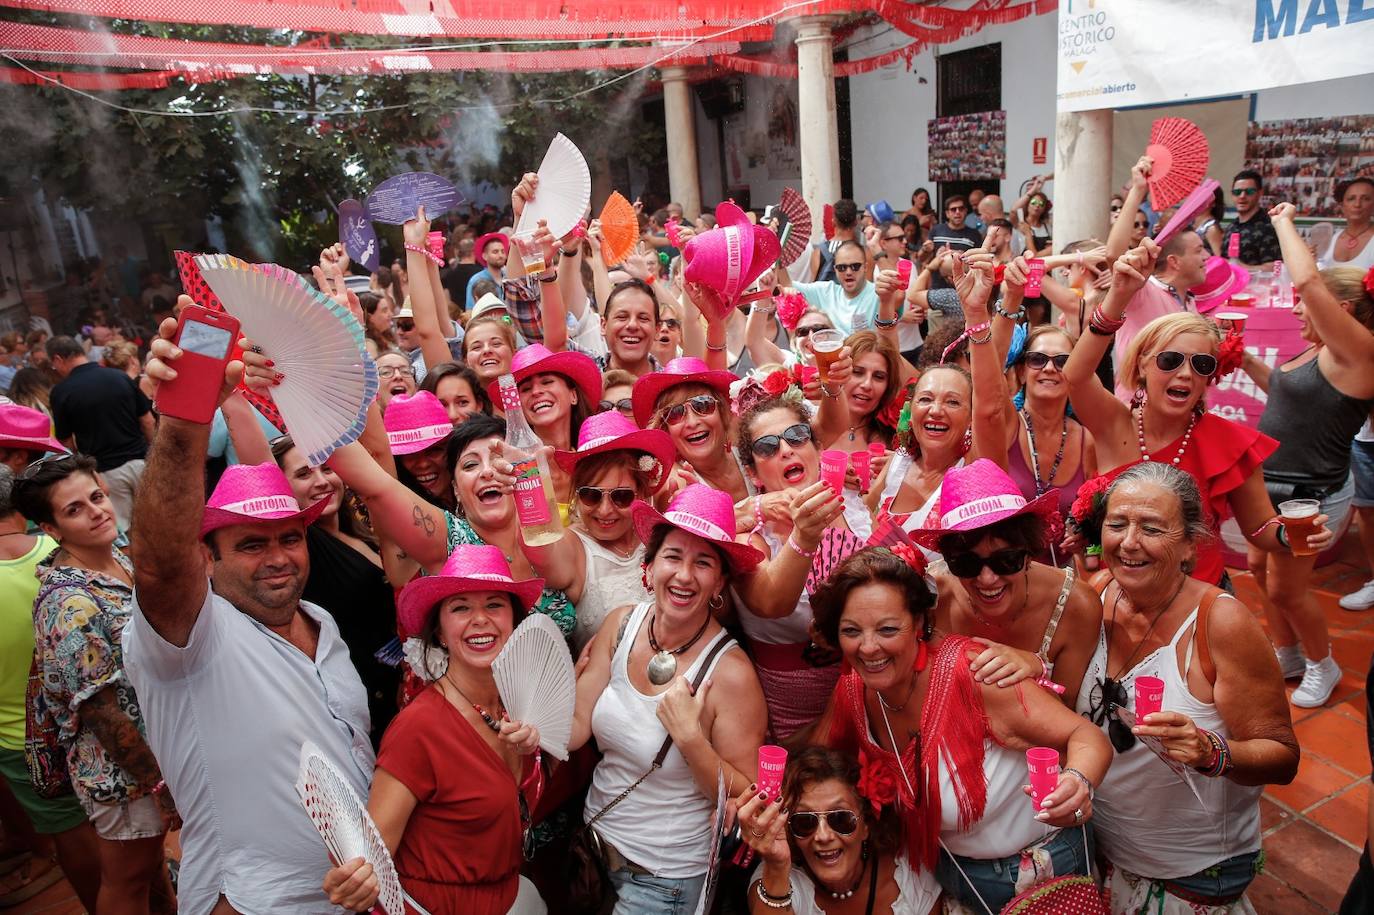 Malagueños y visitantes se han lanzado hoy a la calle para disfrutar el día festivo en la Feria.